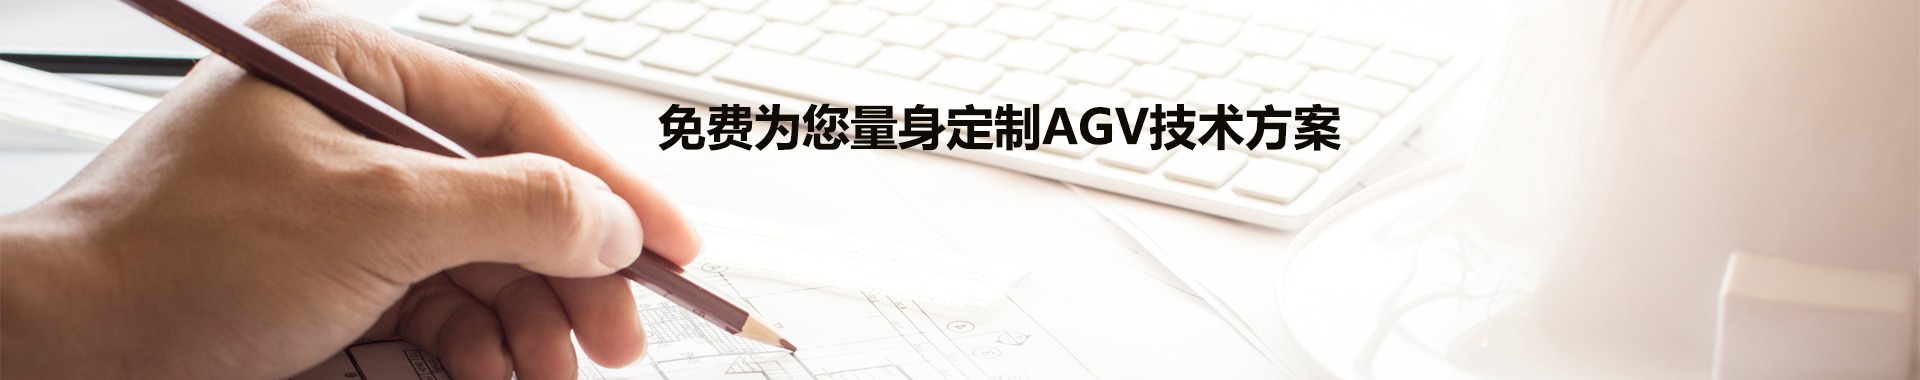 免费AGV技术方案定制